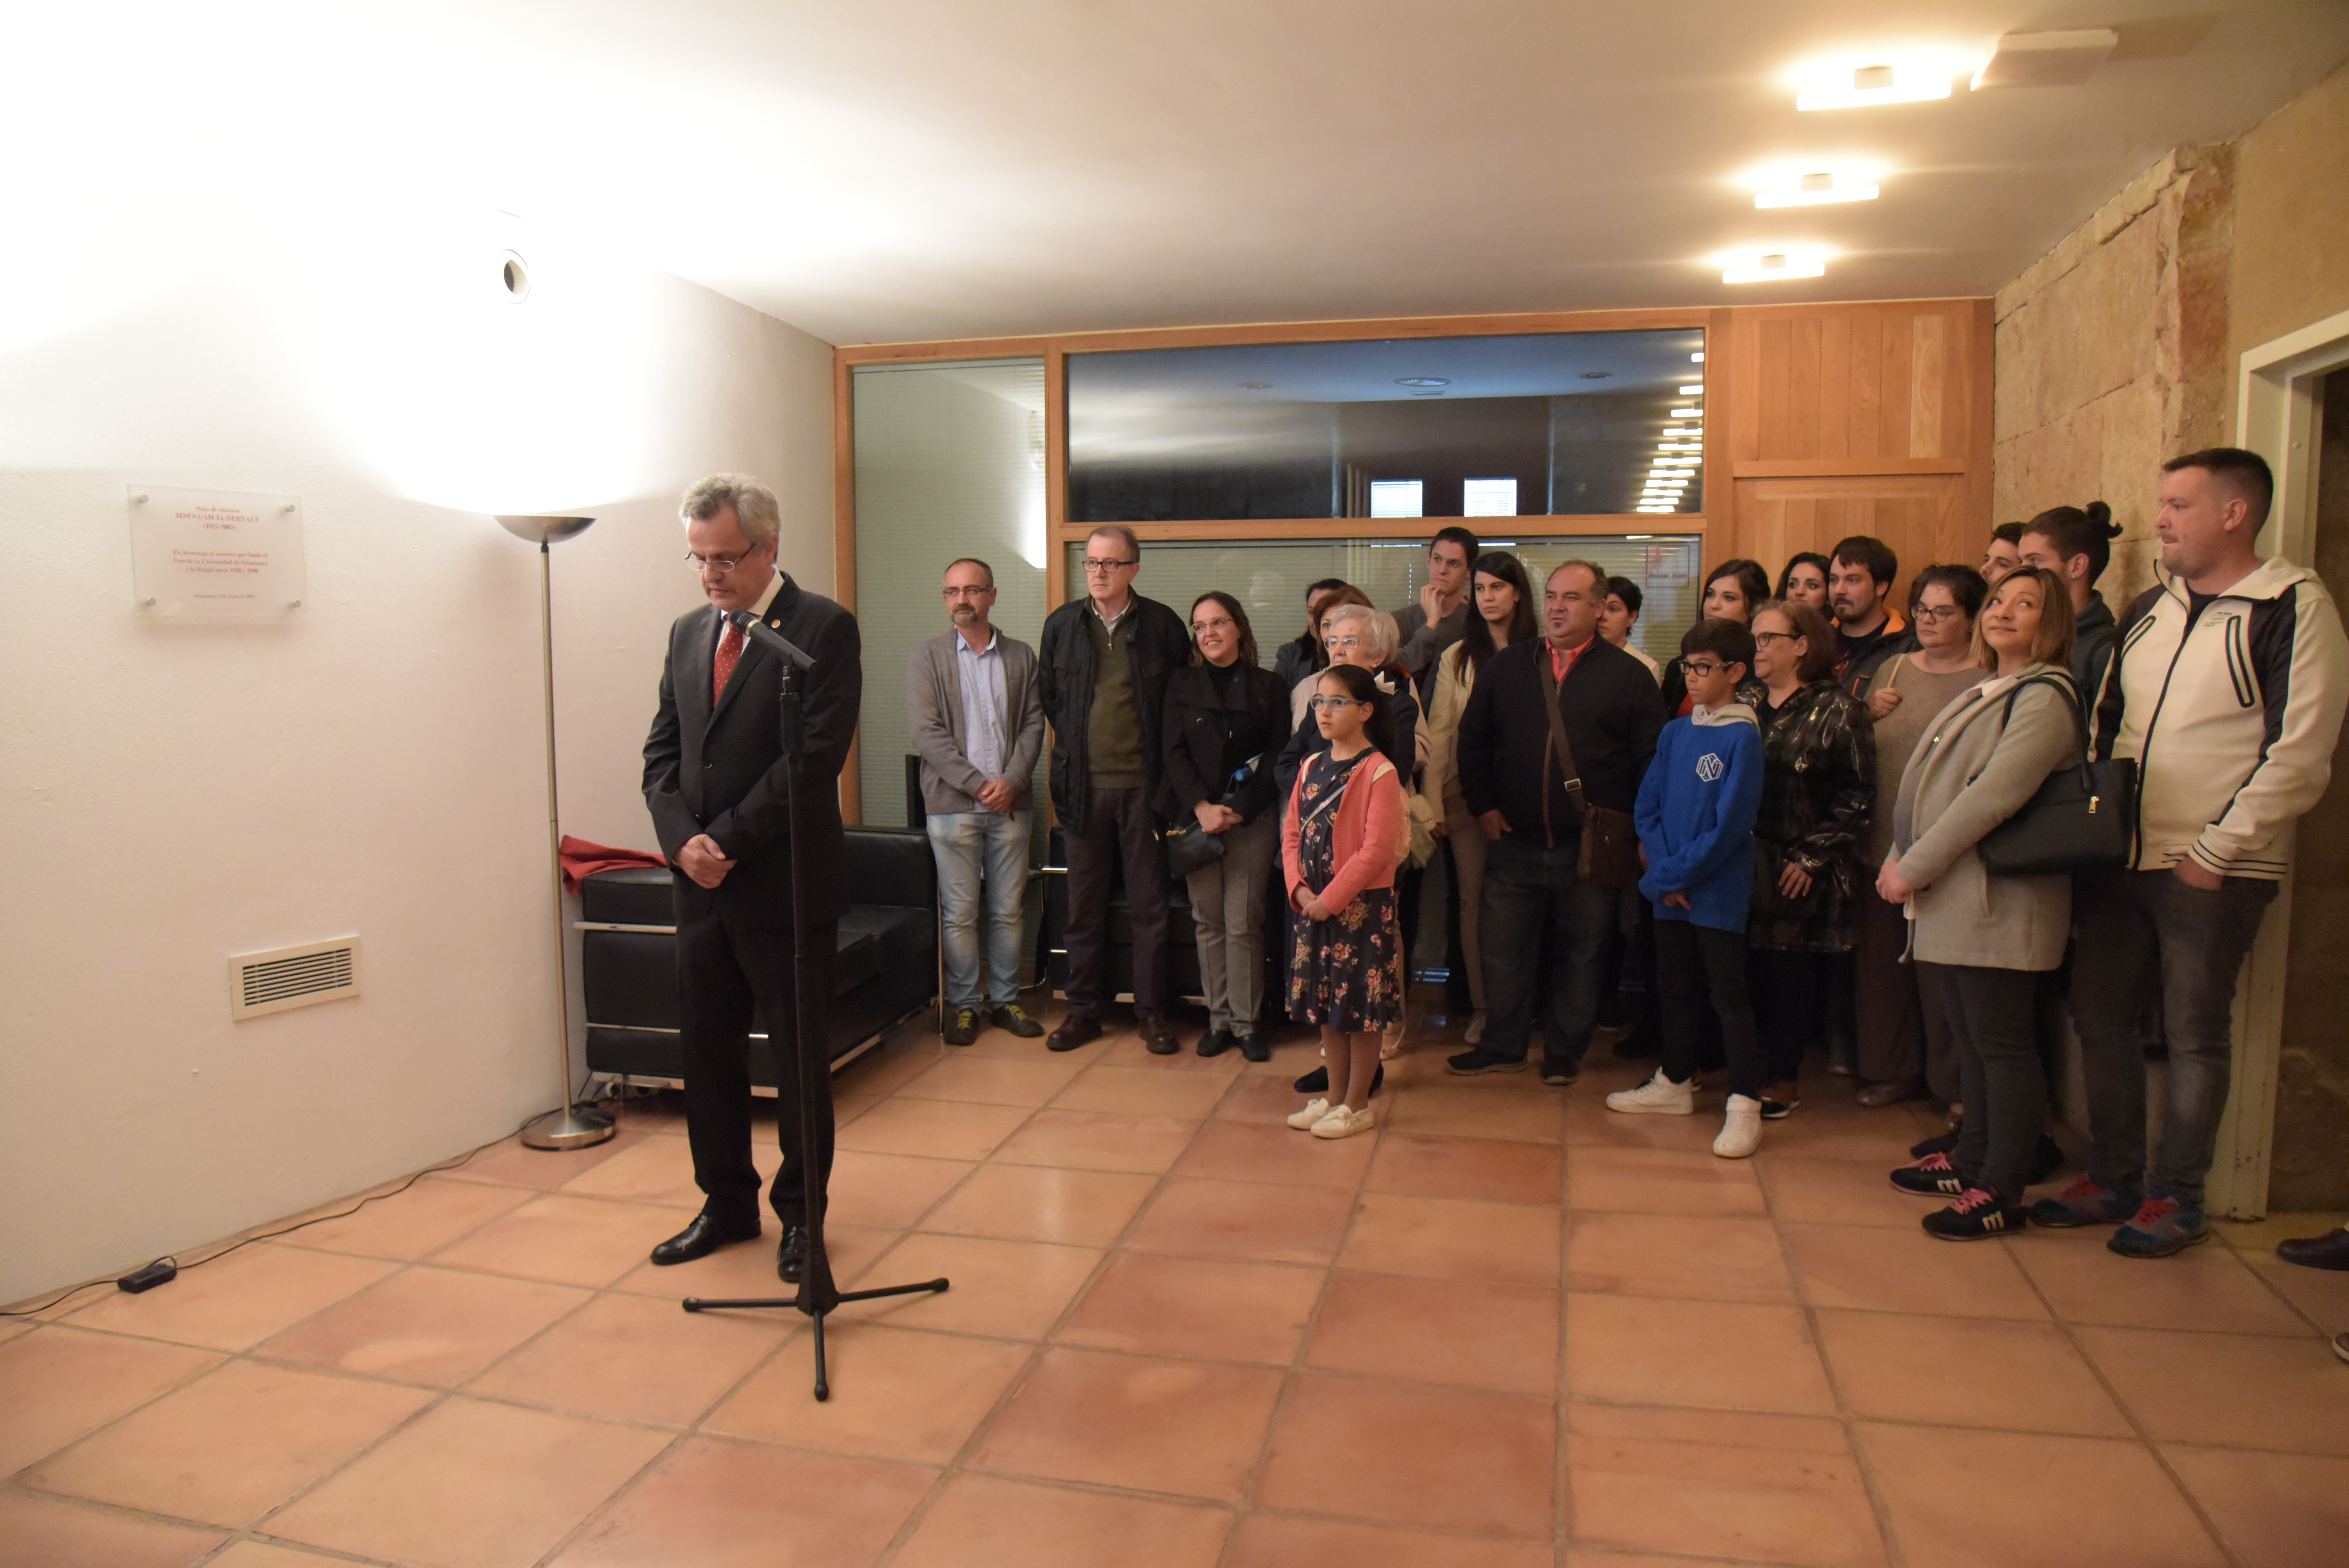 La Universidad de Salamanca dedica la sala de ensayos de la Hospedería de Fonseca a Jesús García-Bernalt, fundador del Coro Universitario